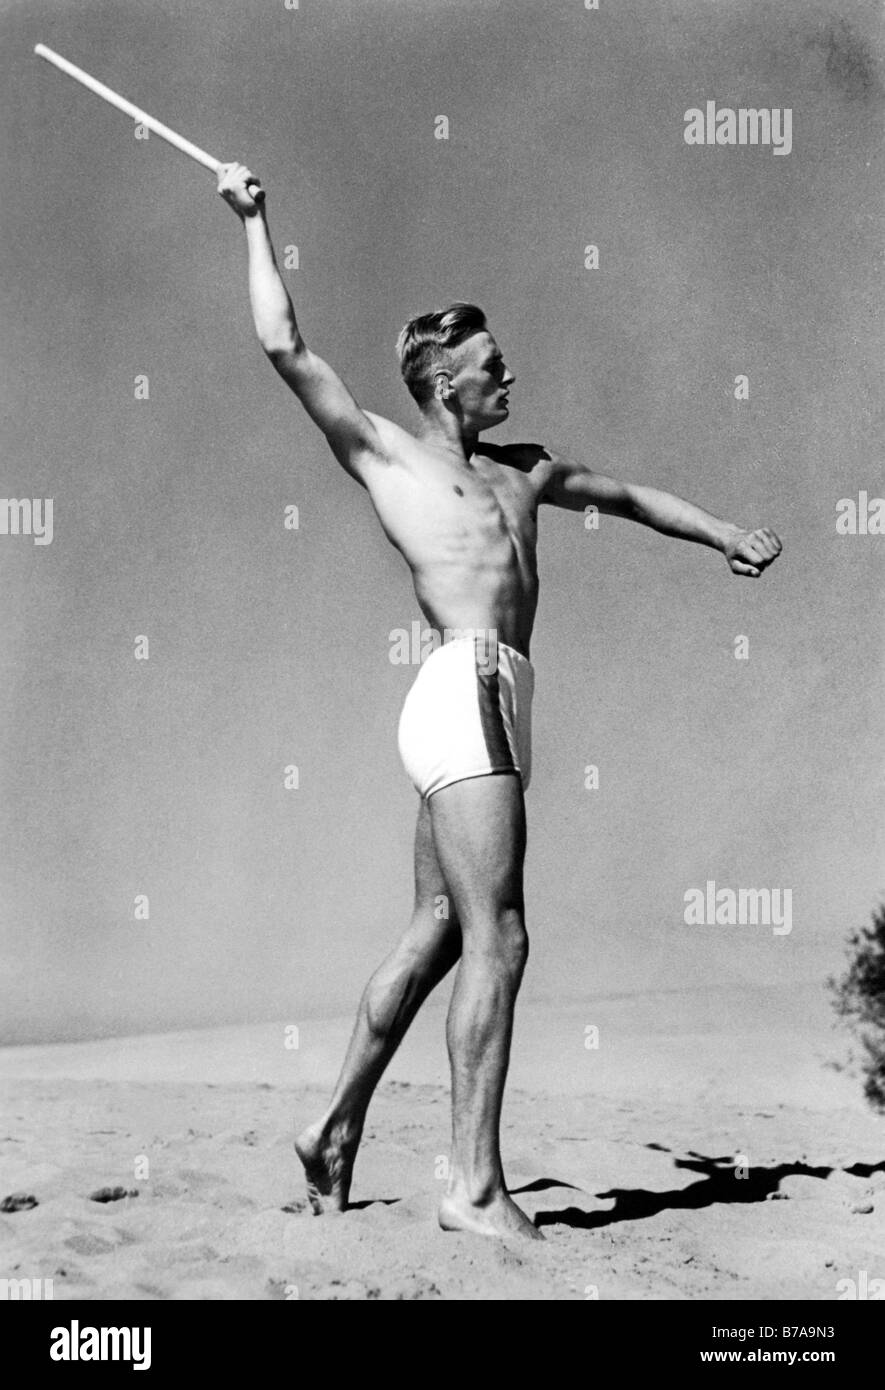 Foto histórica, el hombre arrojar stick, ca. 1940 Foto de stock